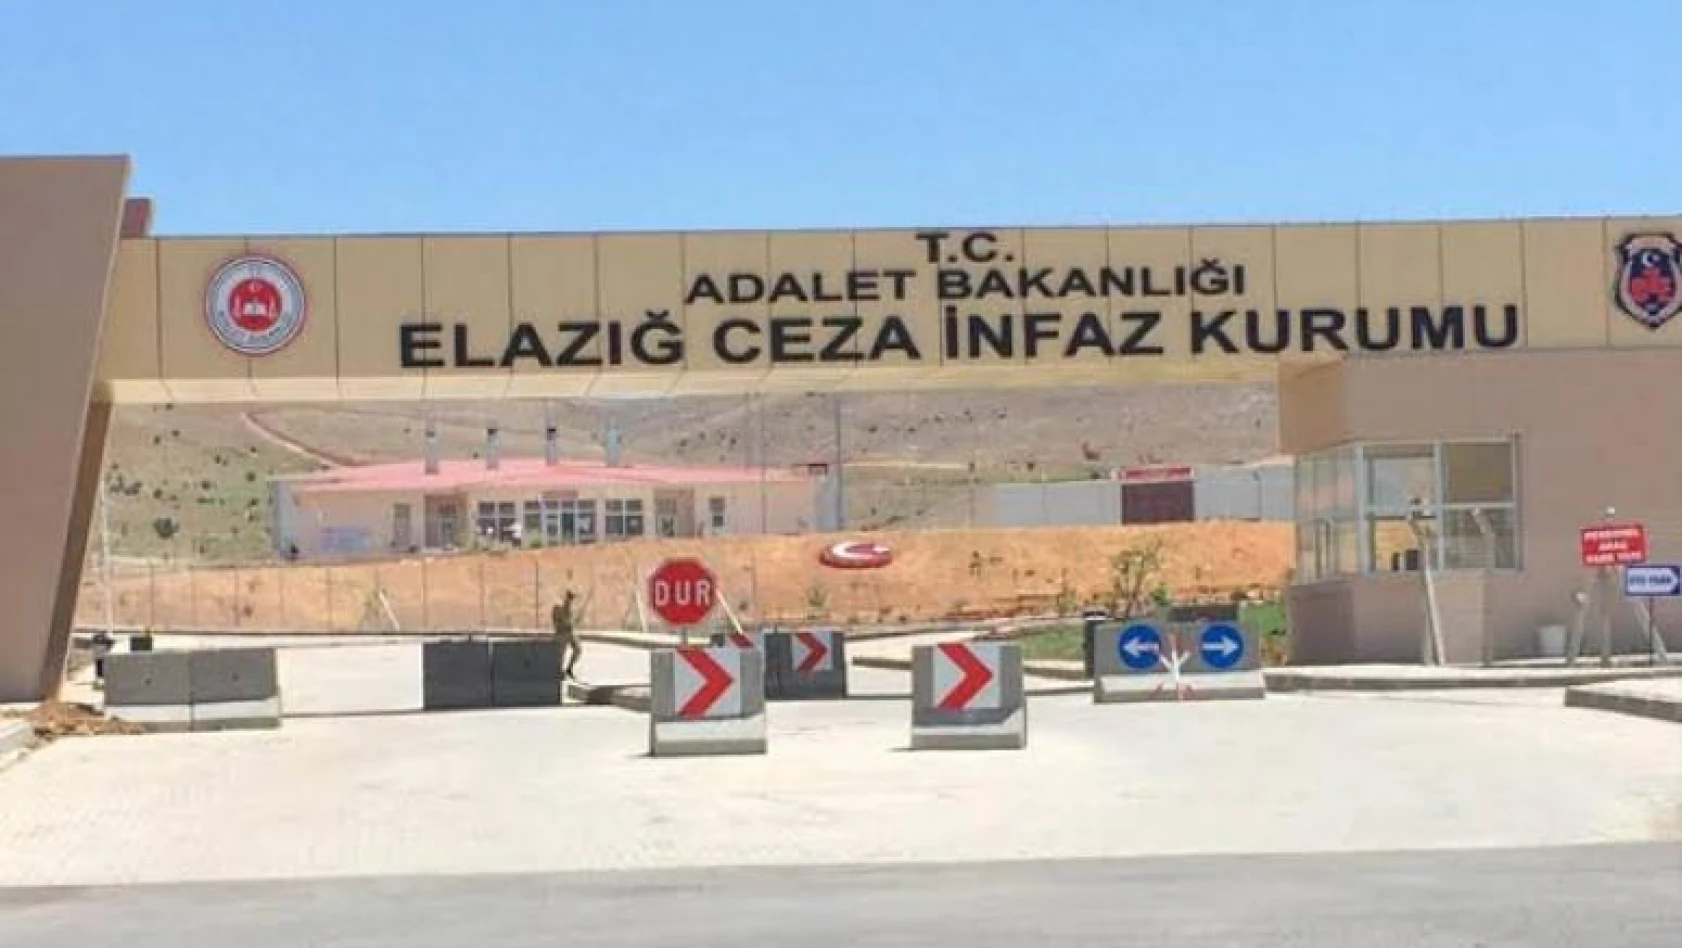 Elazığ  Adalet Sarayı ve Ceza İnfaz Kampüsünde Korona Virüs Nedeniyle Uygulanan Tedbir - Hijyen Çalışmaları